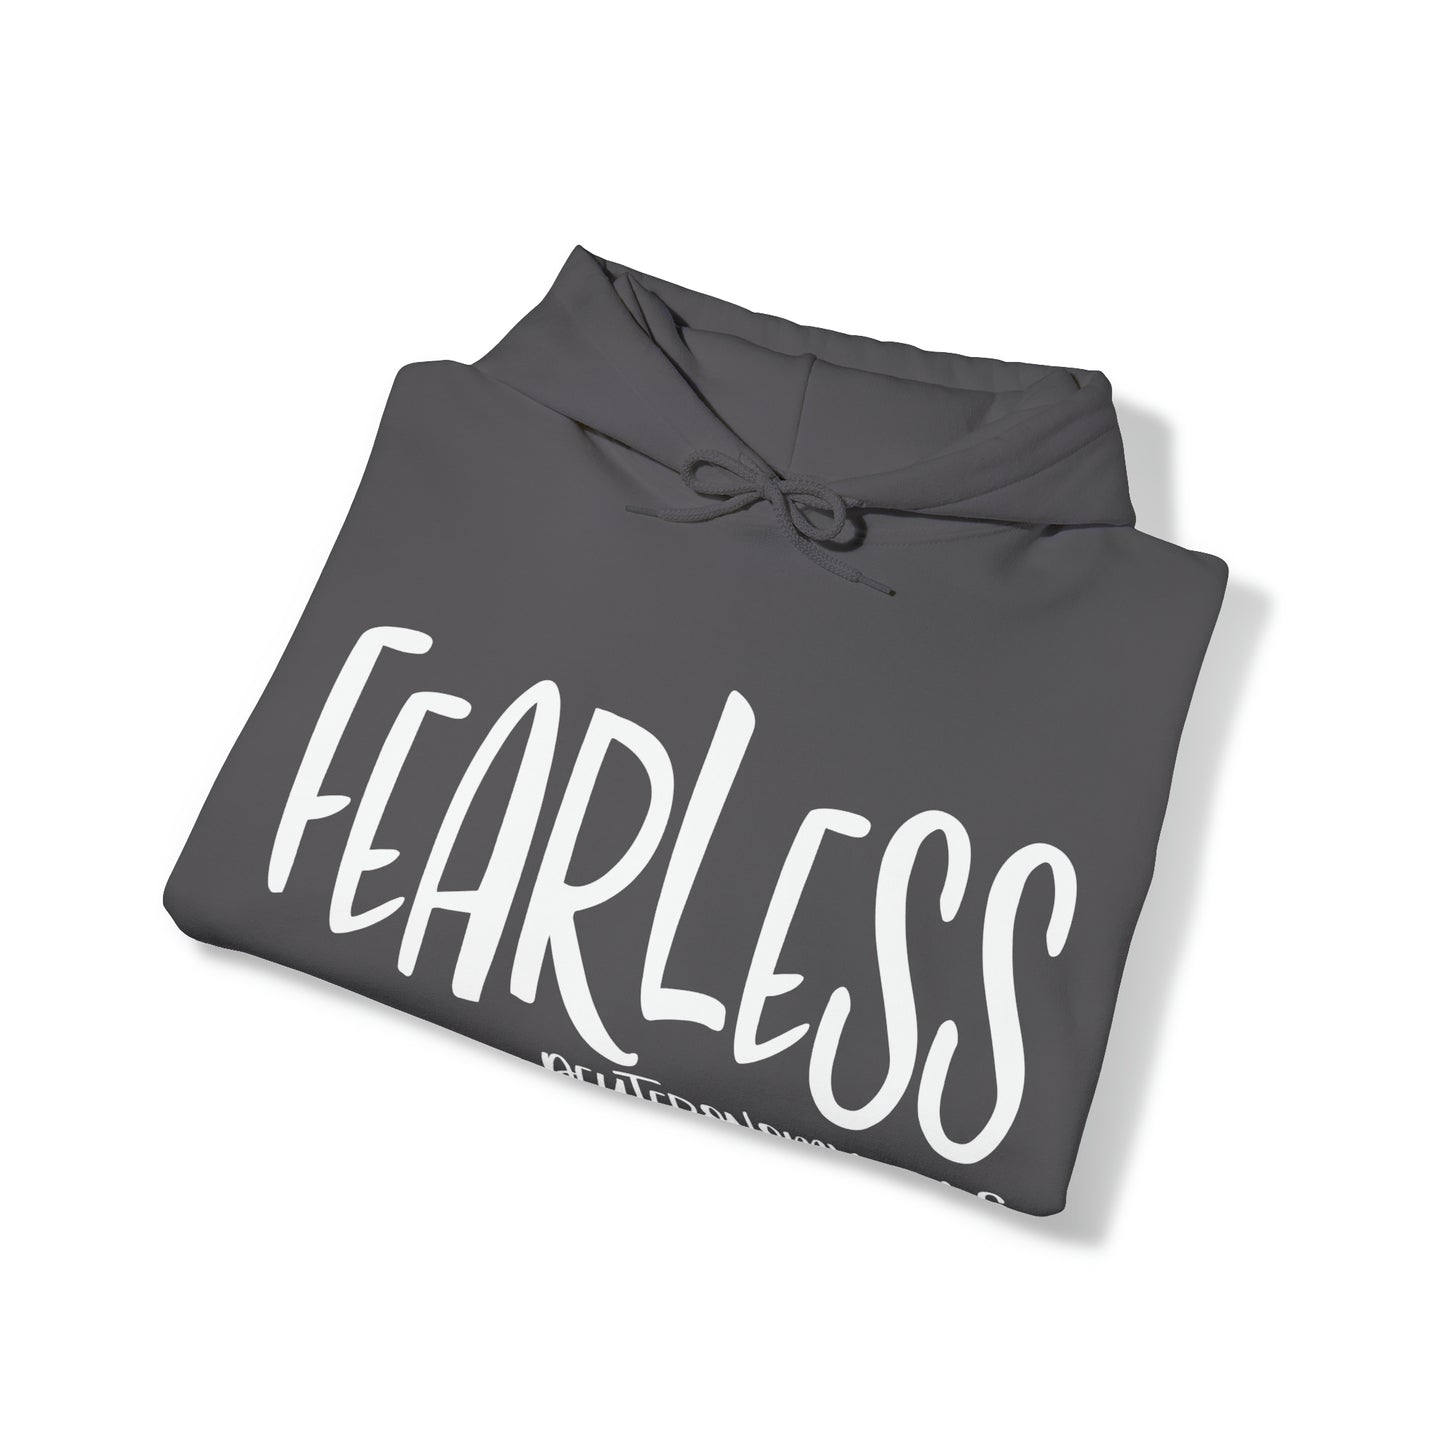 Fearless Unisex Heavy Blend™ Hooded Sweatshirt